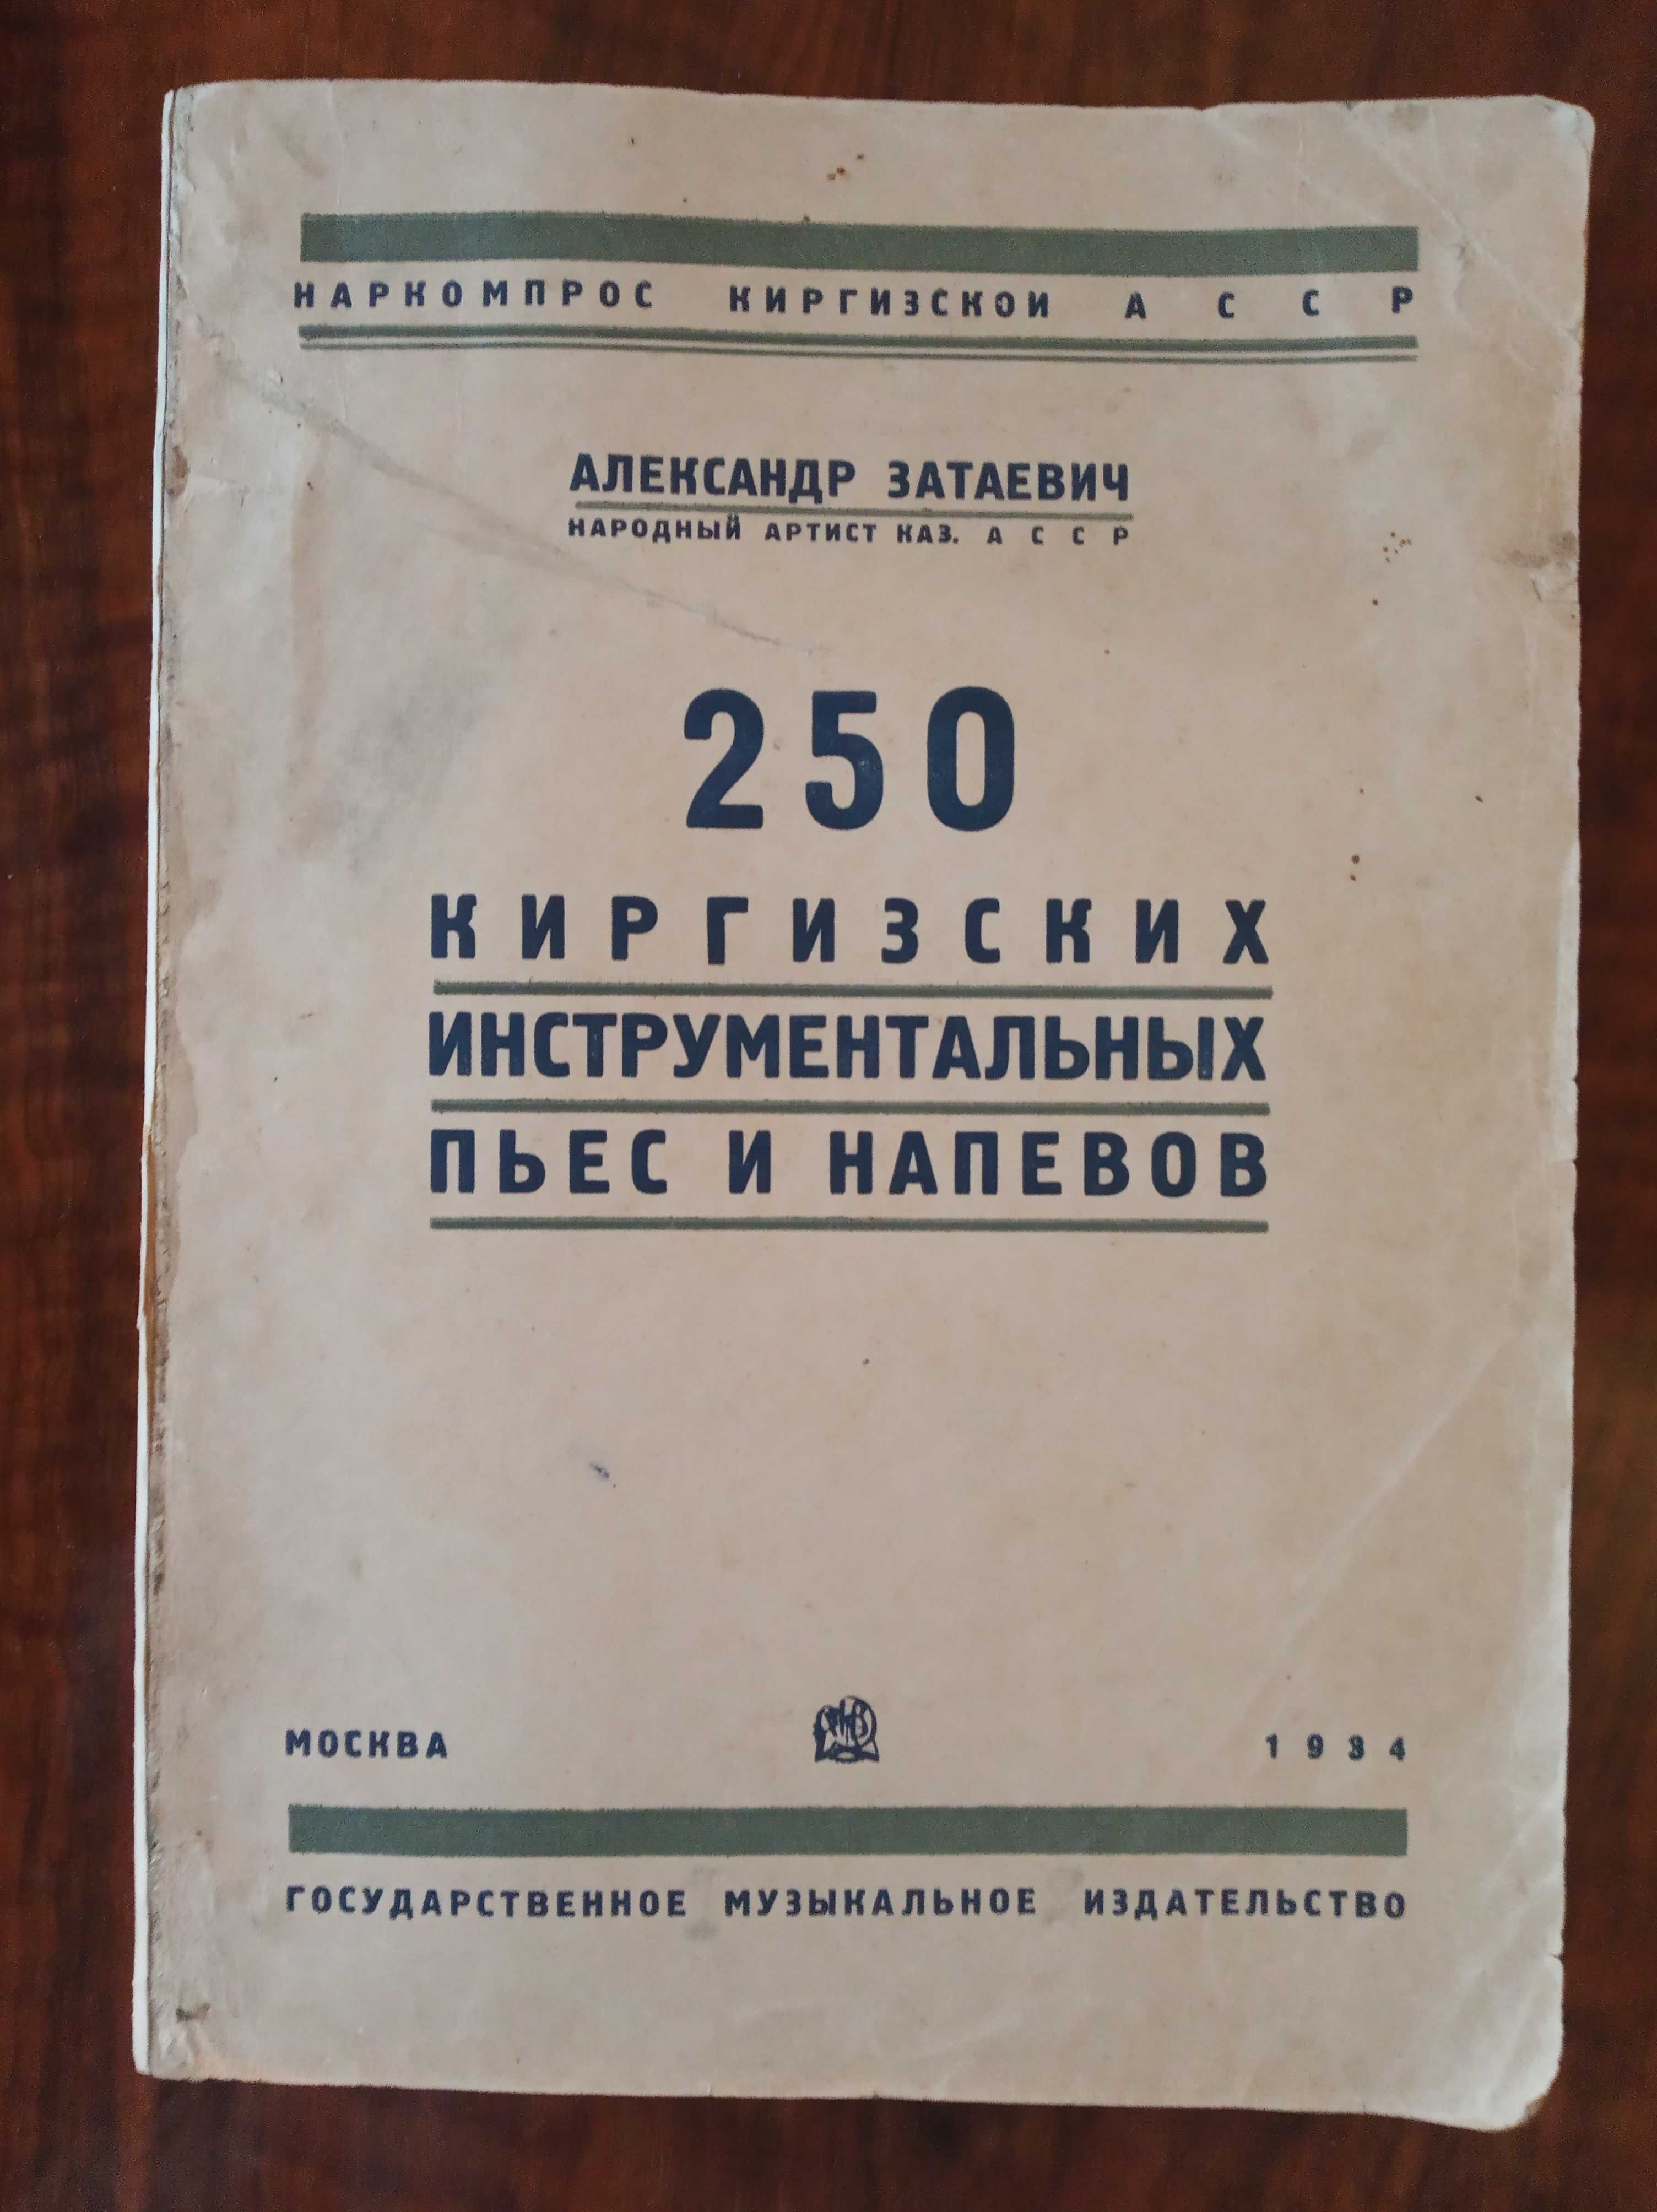 1934 Затаевич - 250 киргизских инструментальных пьес и напевов